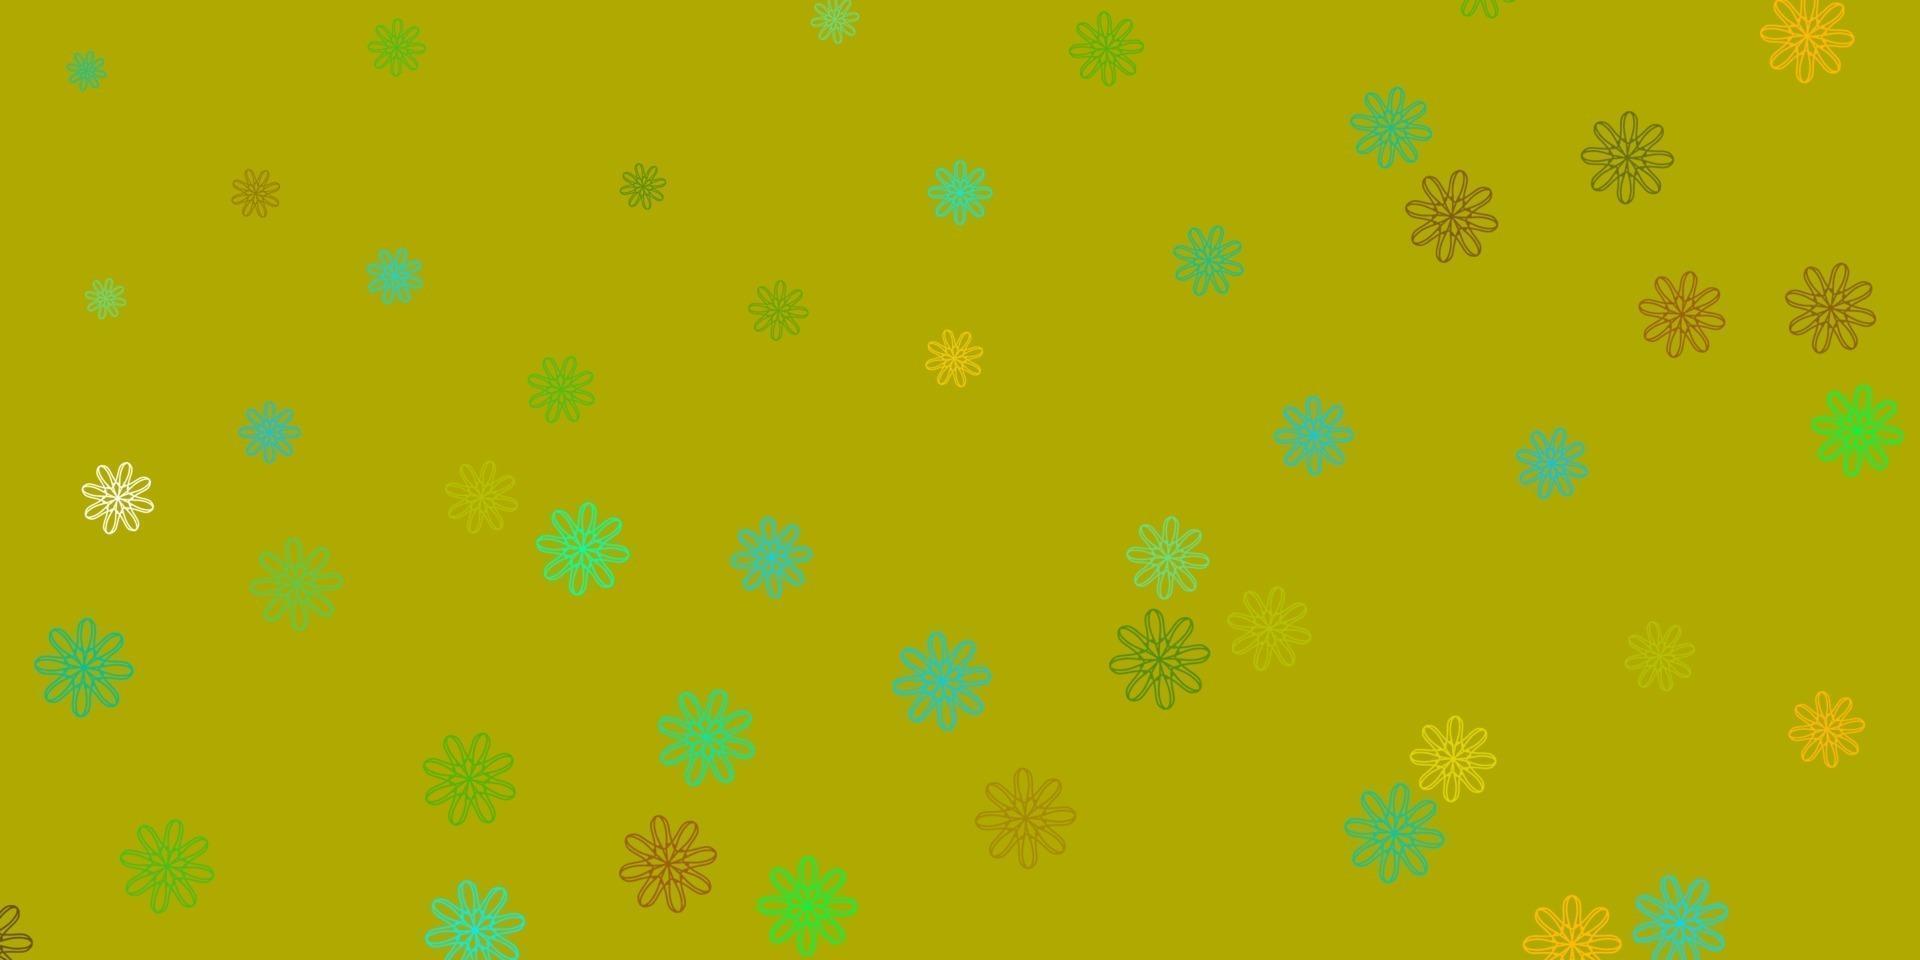 ljusblå, gul vektor doodle mall med blommor.